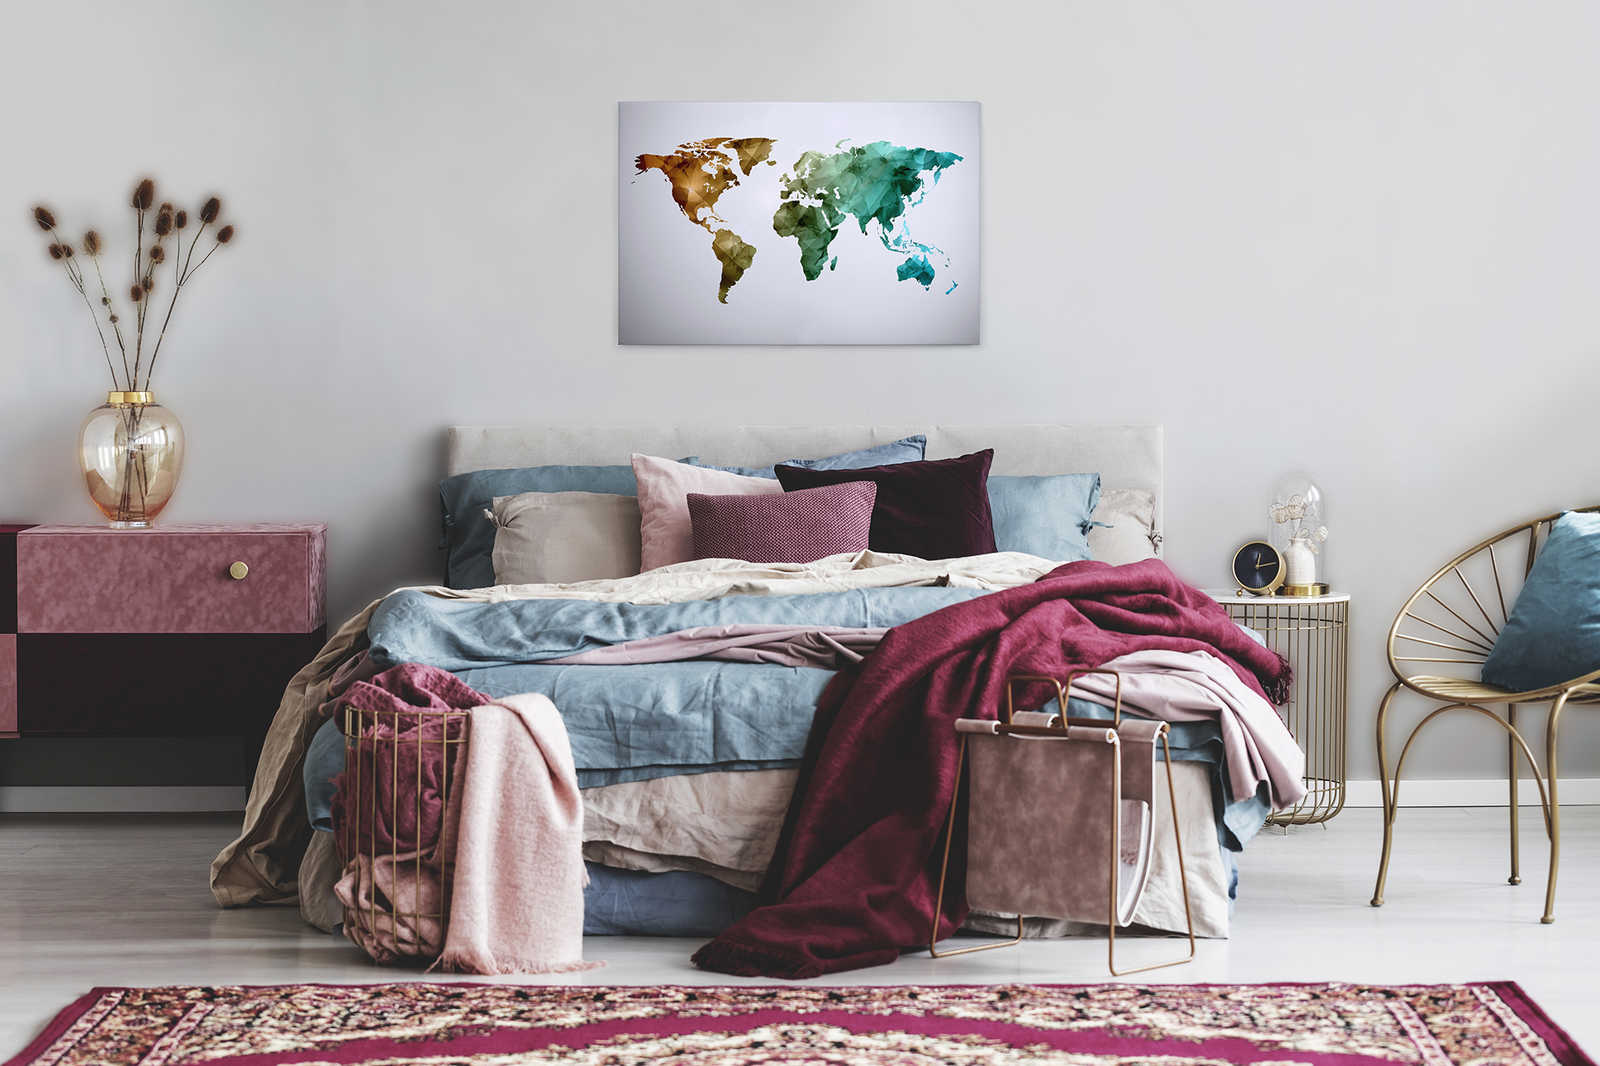             Toile avec mappemonde composée d'éléments graphiques | WorldGrafic 1 - 0,90 m x 0,60 m
        